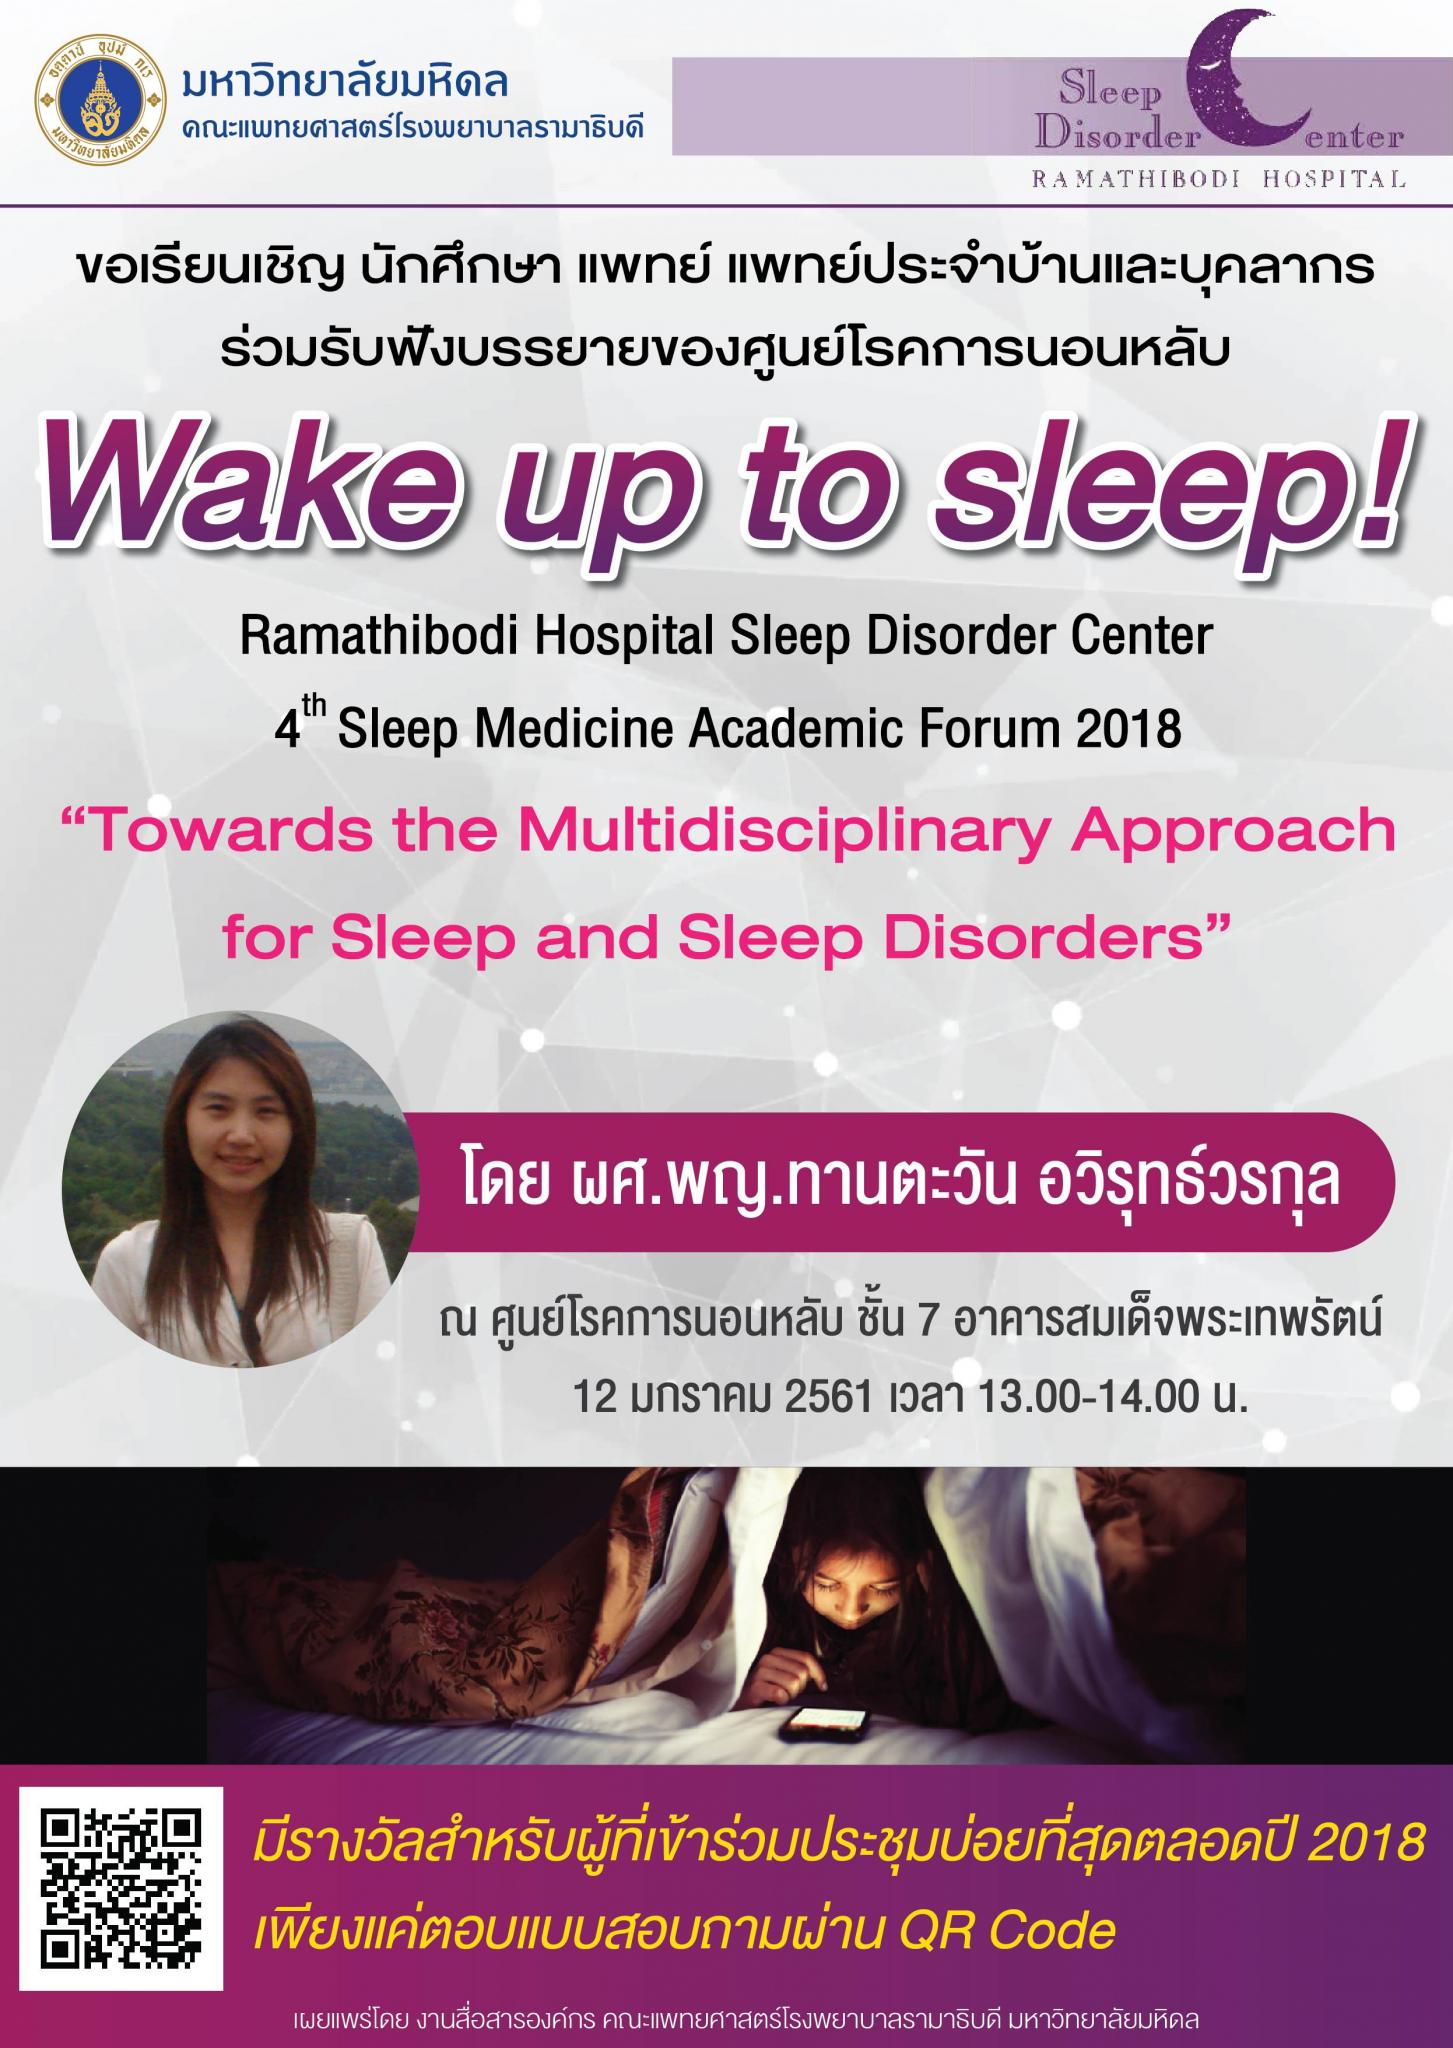 ขอเชิญร่วมรับฟังบรรยาย Wake up to sleep! "Towards the Multidisciplinary Approach for Sleep and Sleep Disorders"